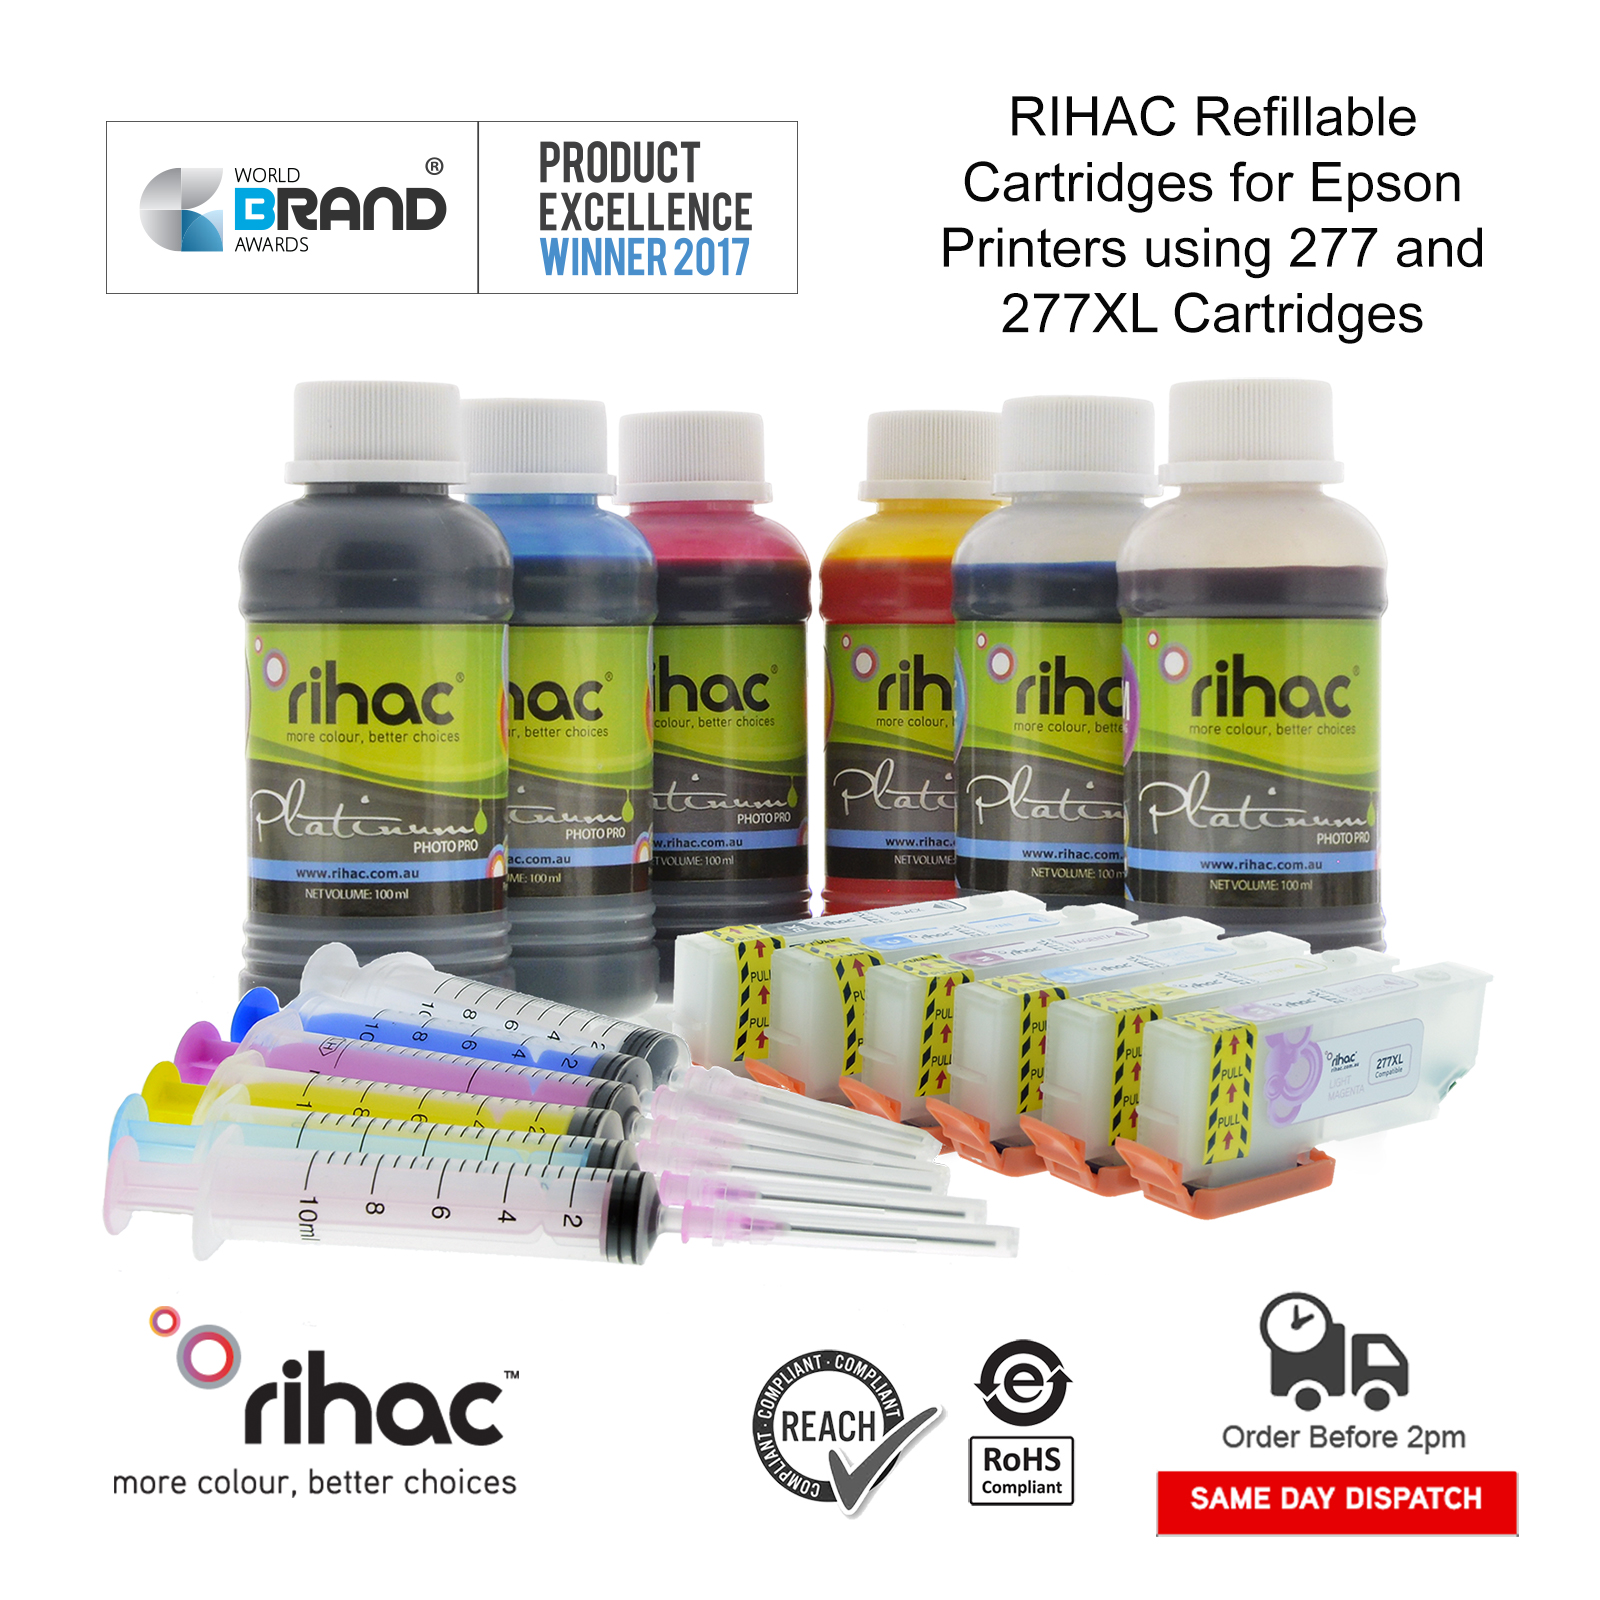 Rihac dye sub dye sublimation heat transfer refillable cartridge strater kit ink for epson printers using 277 277XL cartridges XP-970 XP-960 XP-950 XP-860 XP-850